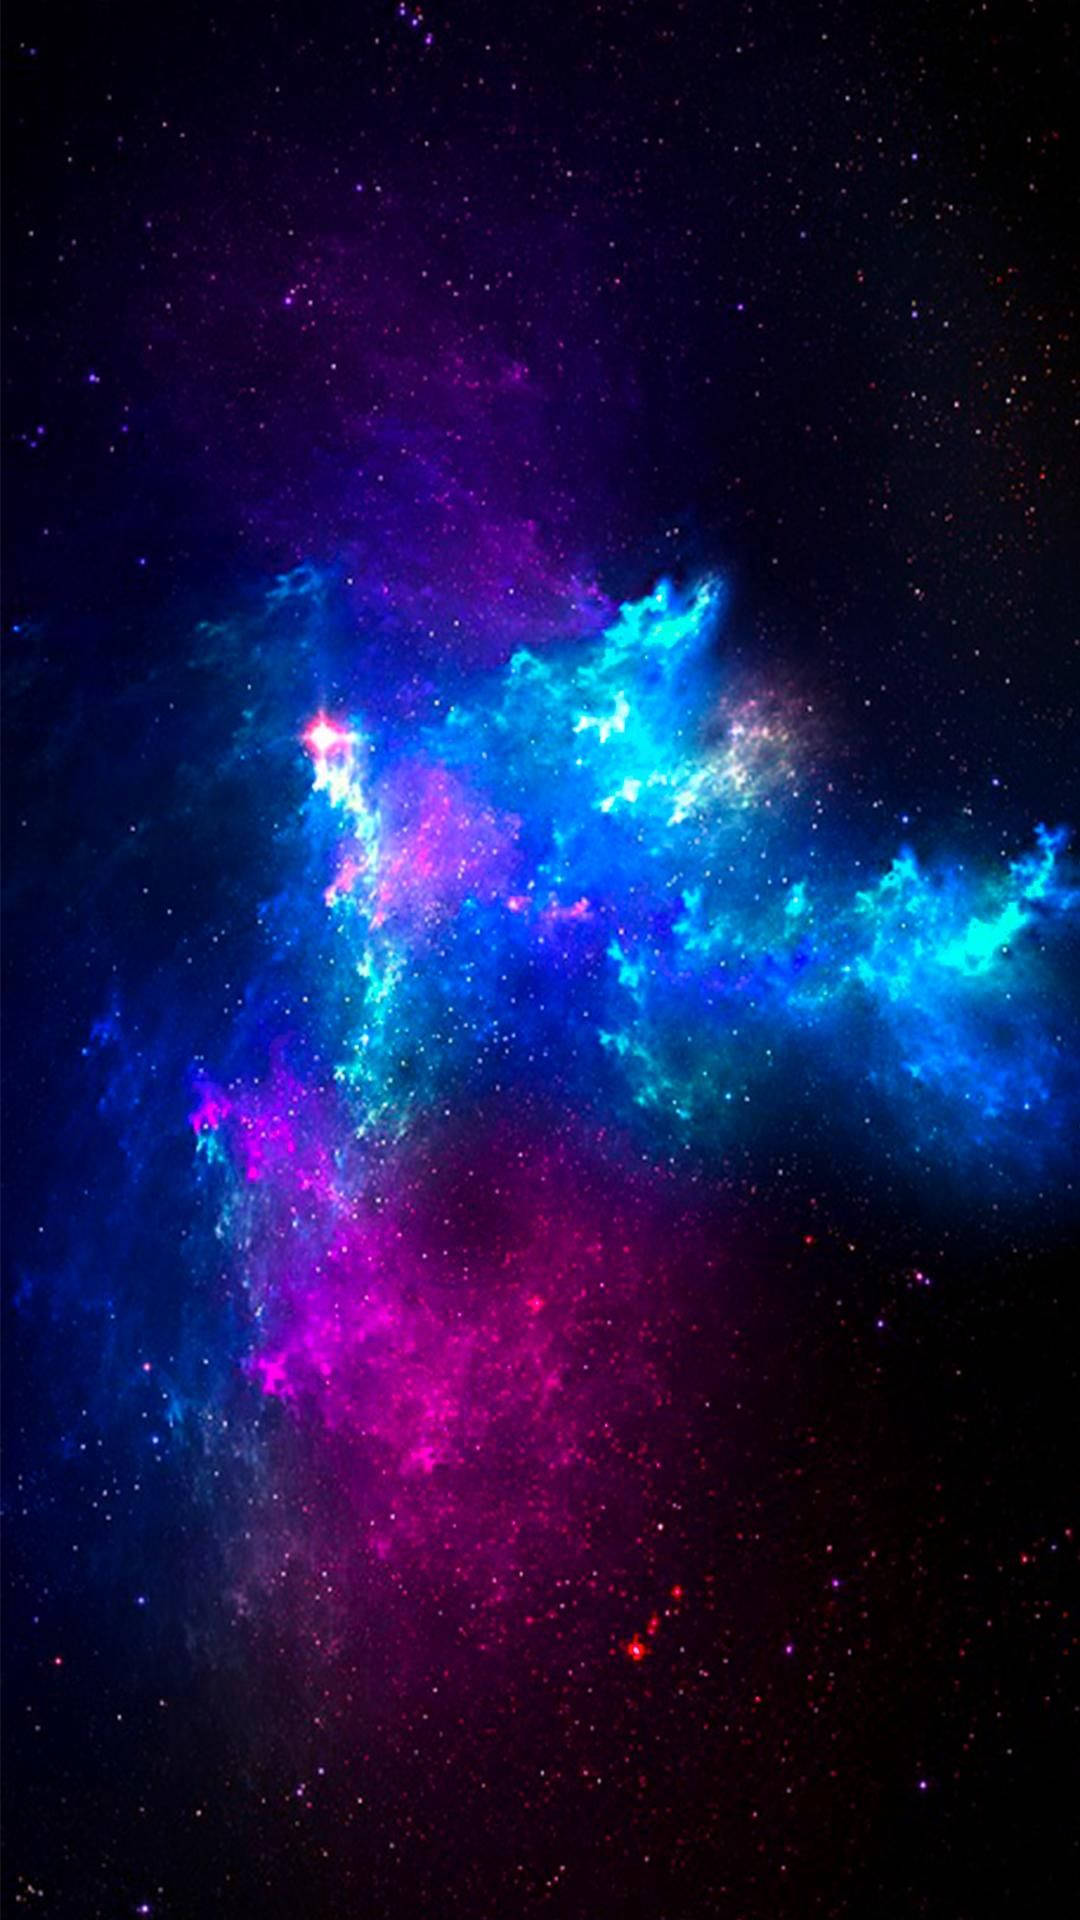 Neon Clouds In A Cute Galaxy Picture